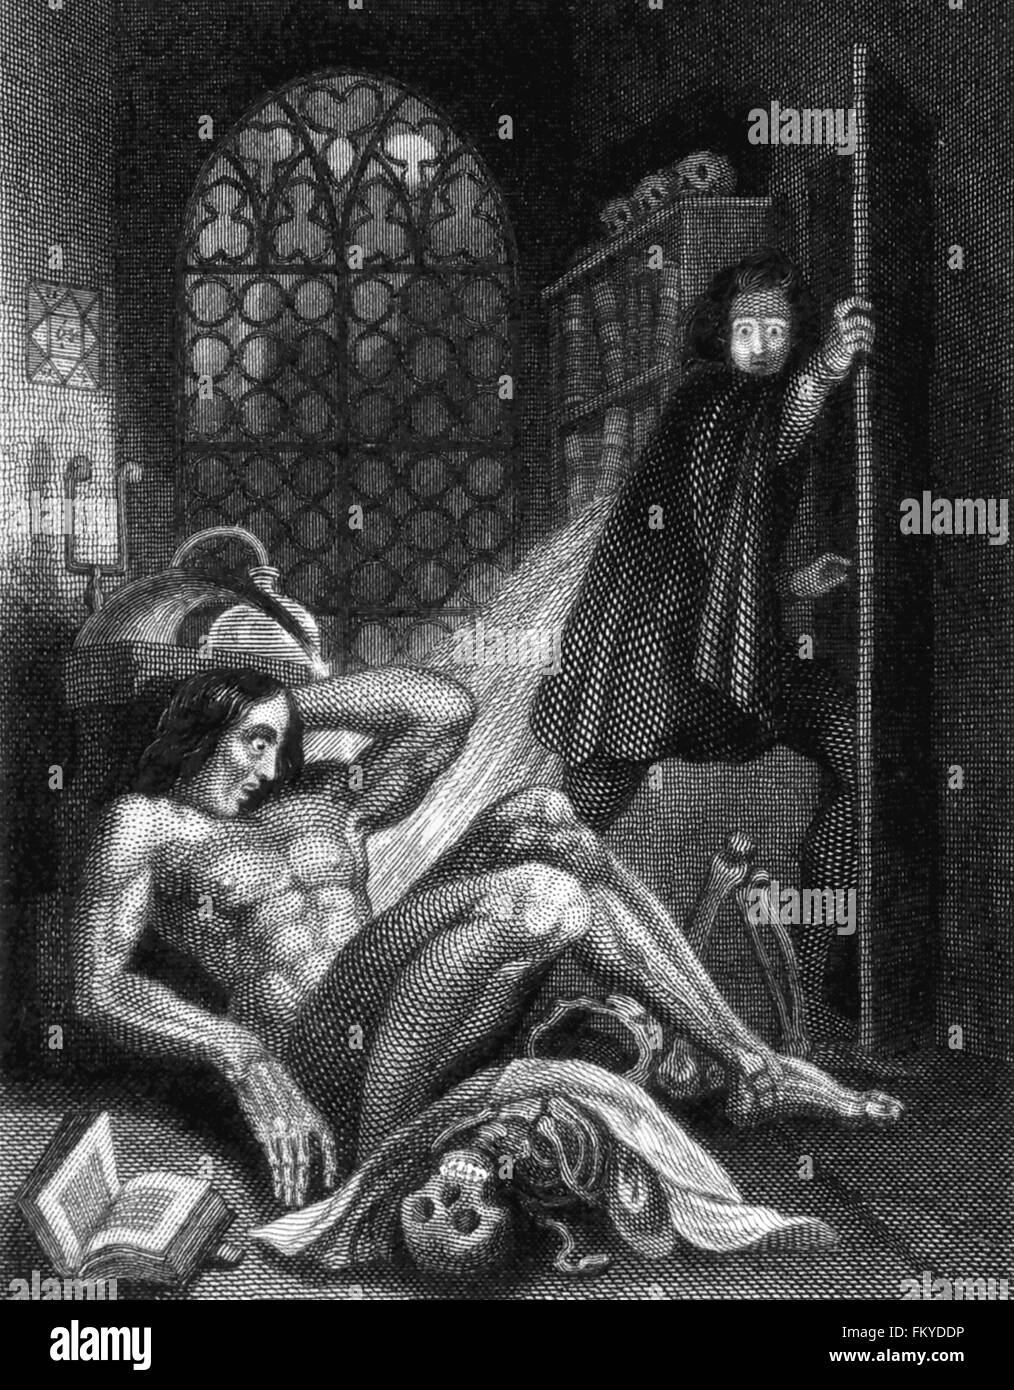 Frankenstein di Mary Shelley. Theodore von Holst dell'illustrazione sul coperchio interno della terza edizione di Mary Shelley 'Frankenstein", pubblicato nel 1831. Foto Stock